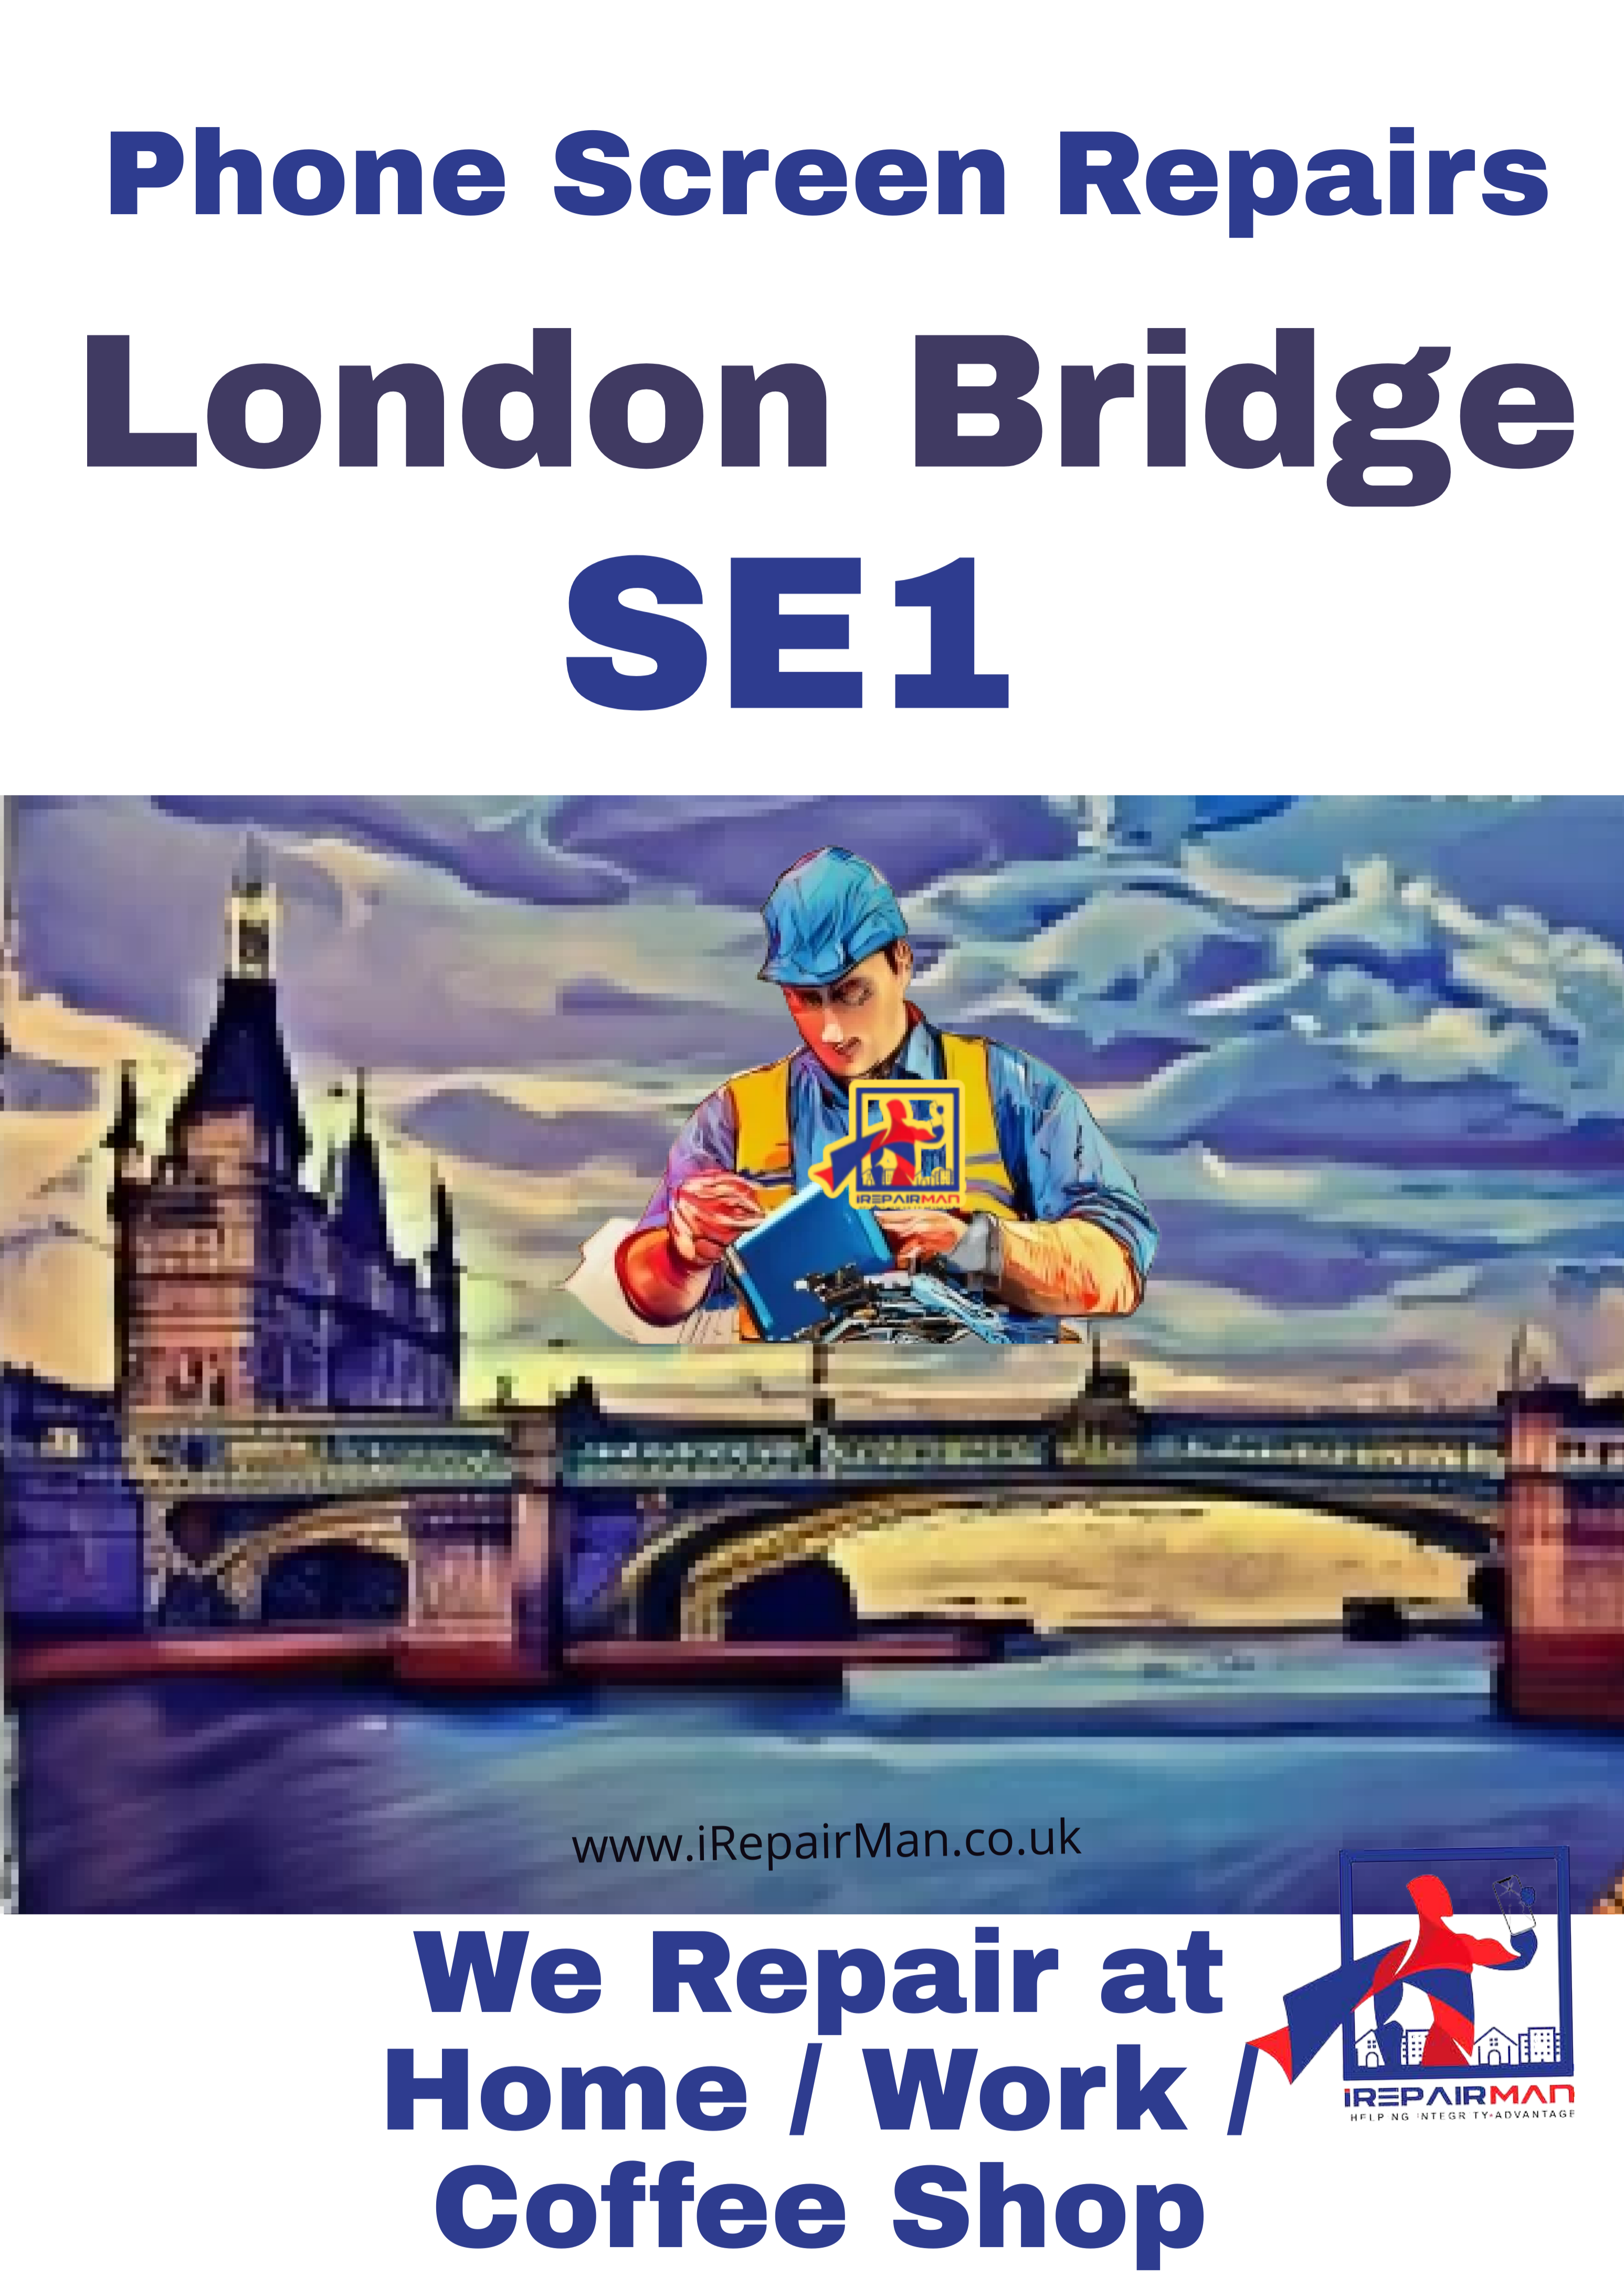 iPhone repairs in London Bridge SE1